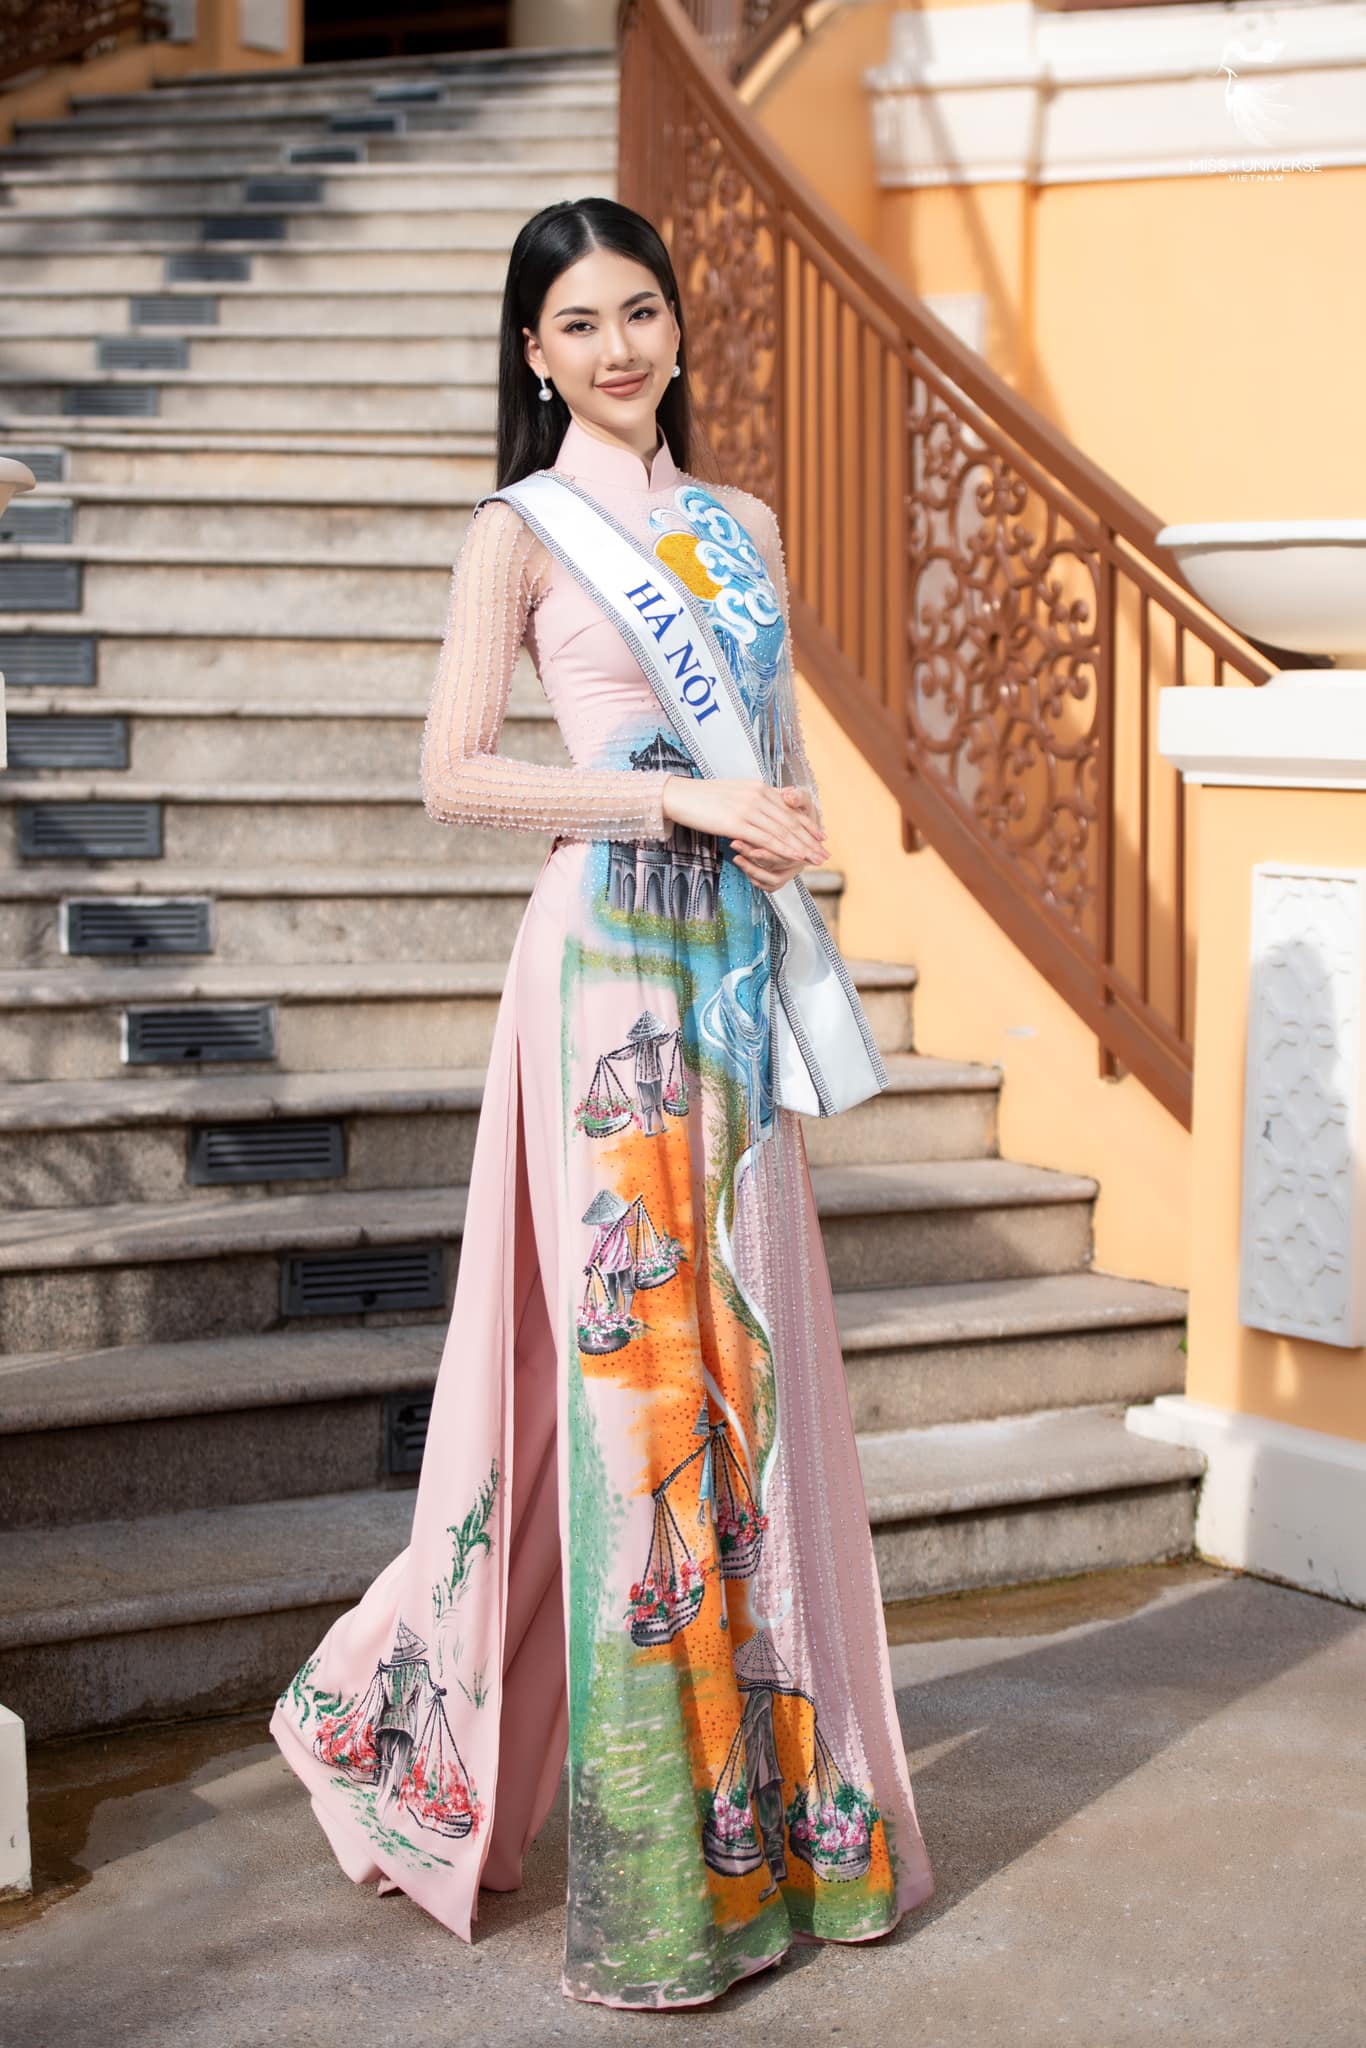 Nhan sắc xinh đẹp đầy mê hoặc của tân Miss Universe Vietnam 2023 Bùi Quỳnh Hoa - Ảnh 7.